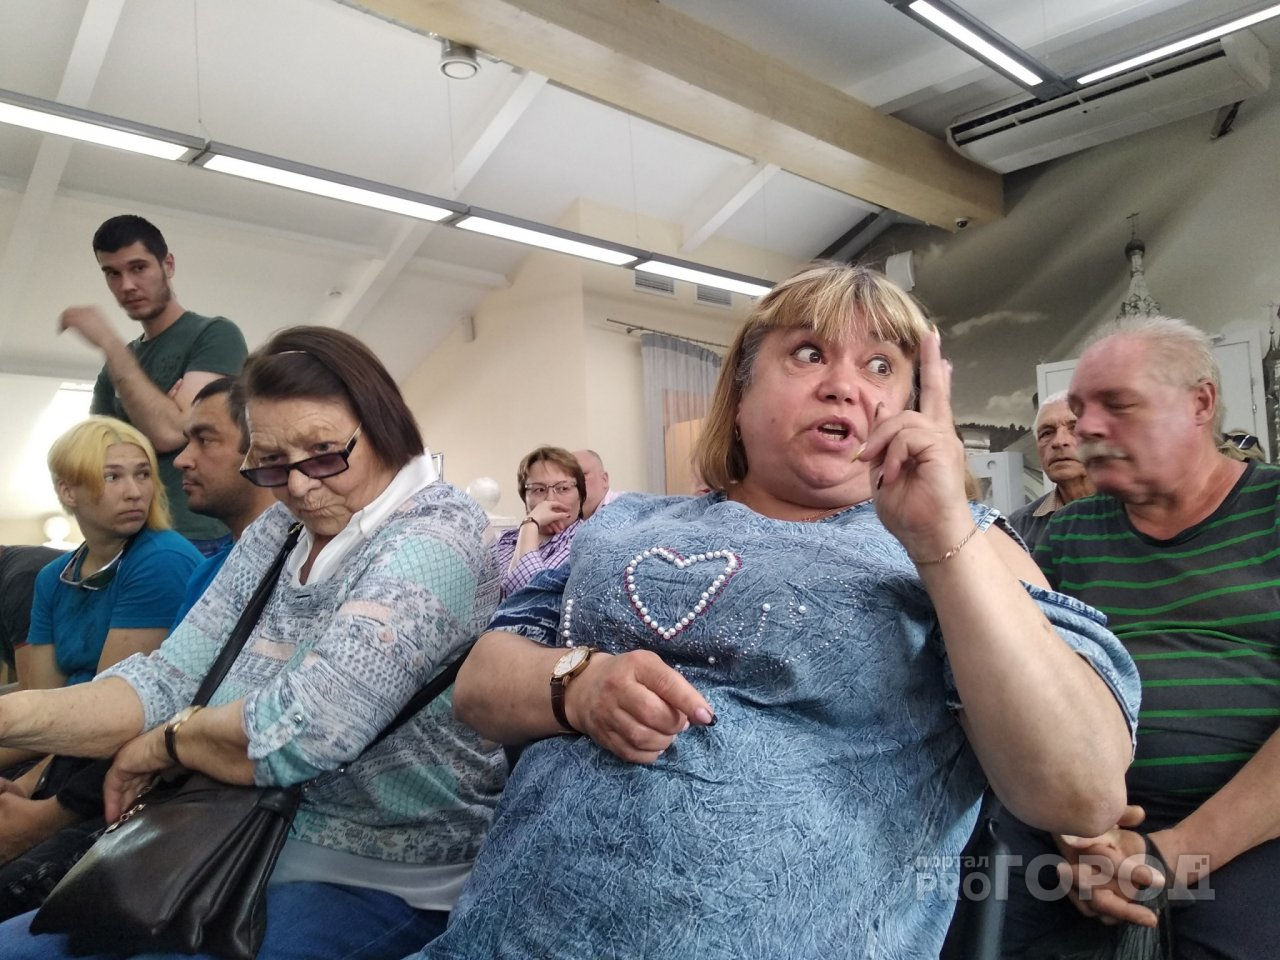 "Нет лекарств, нет врачей": скандал вокруг объединения больниц разгорелся в Ярославле